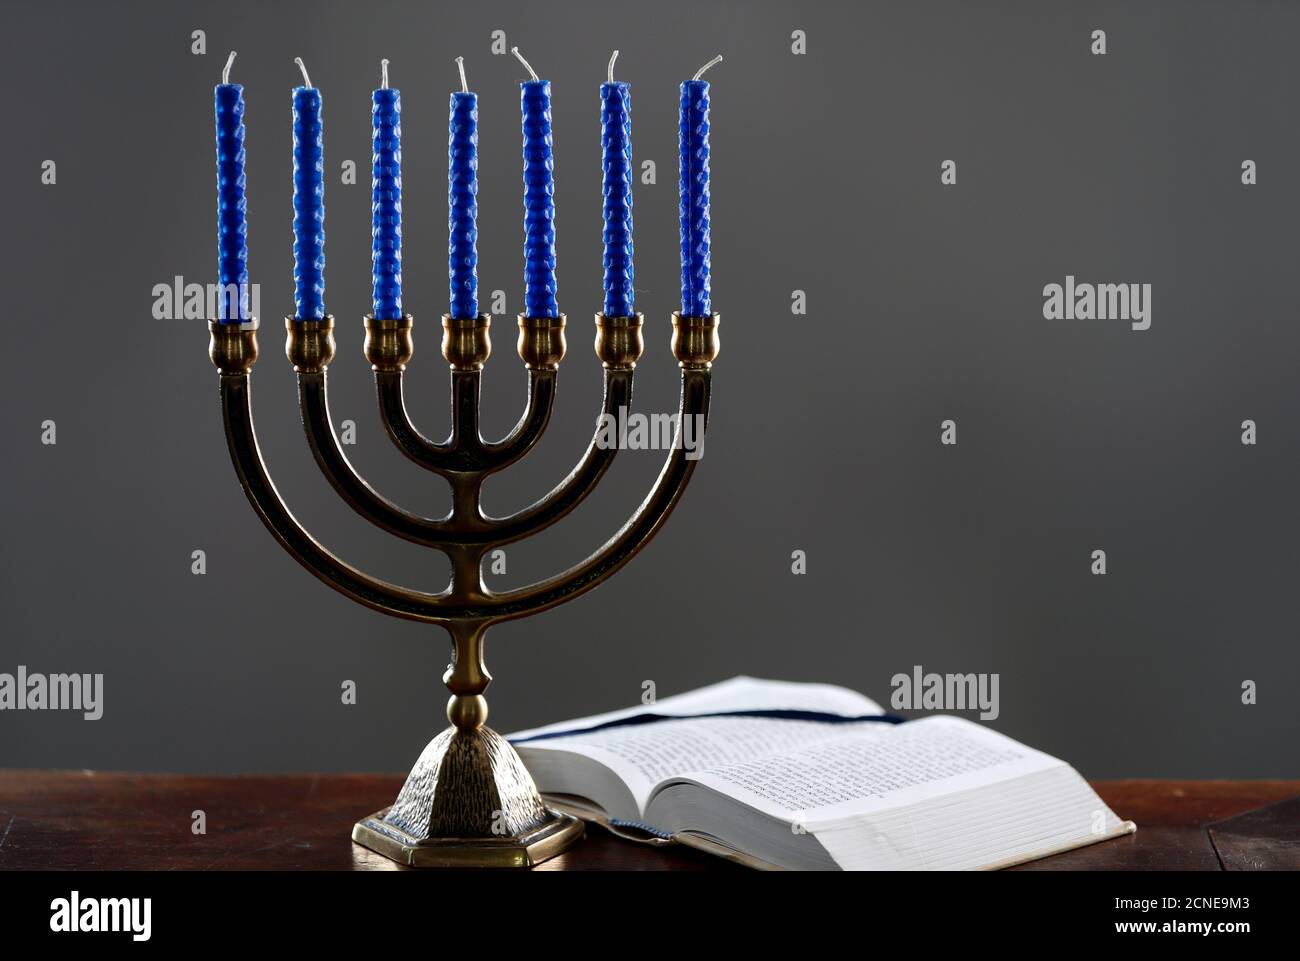 Open Torah e la Menorah (Lampstand ebraico a sette lampade), simbolo del giudaismo fin dai tempi antichi, Francia, Europa Foto Stock